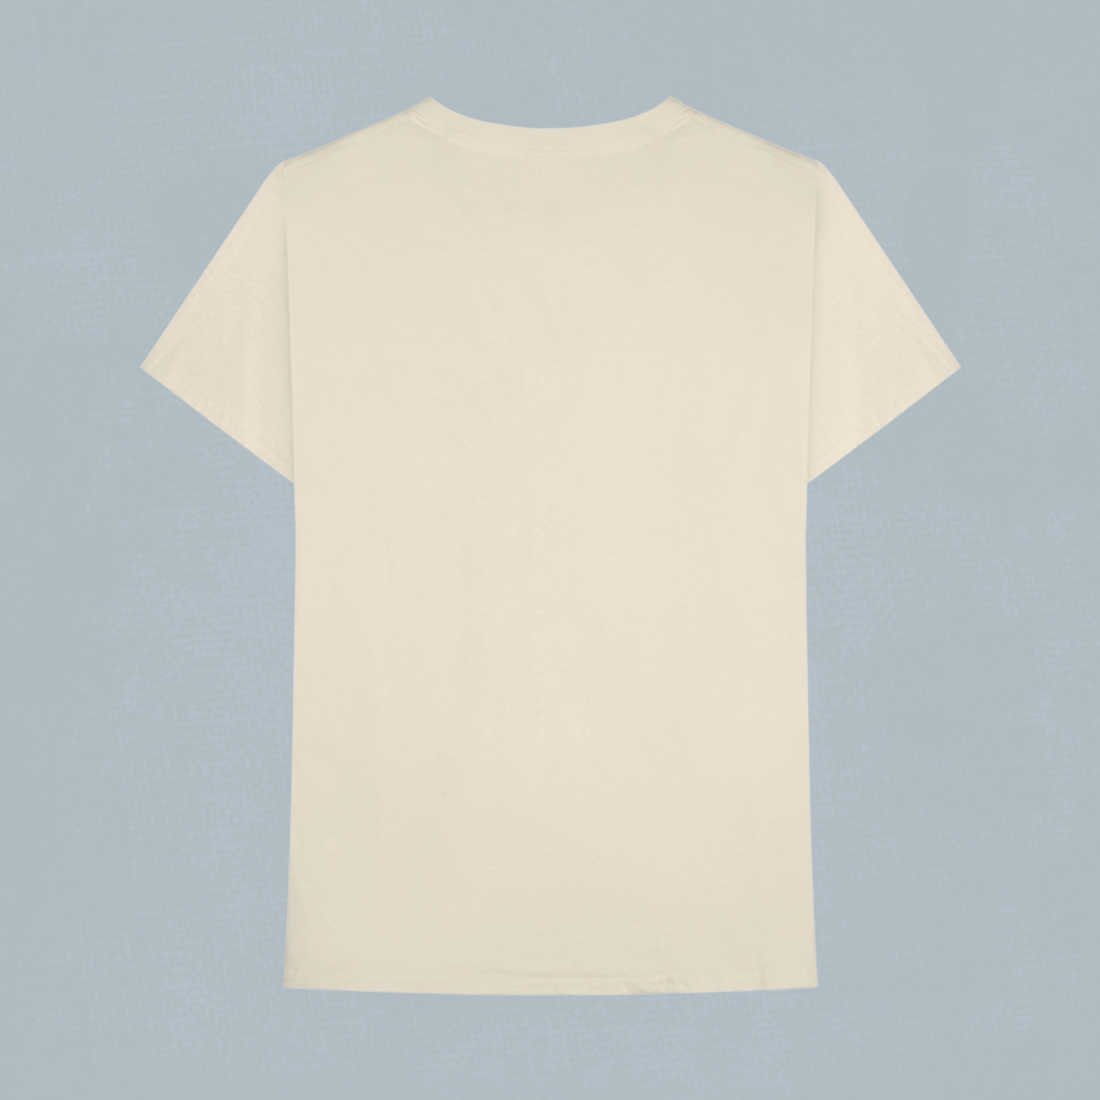 Paul Weller - Fat Pop Cover T-shirt I